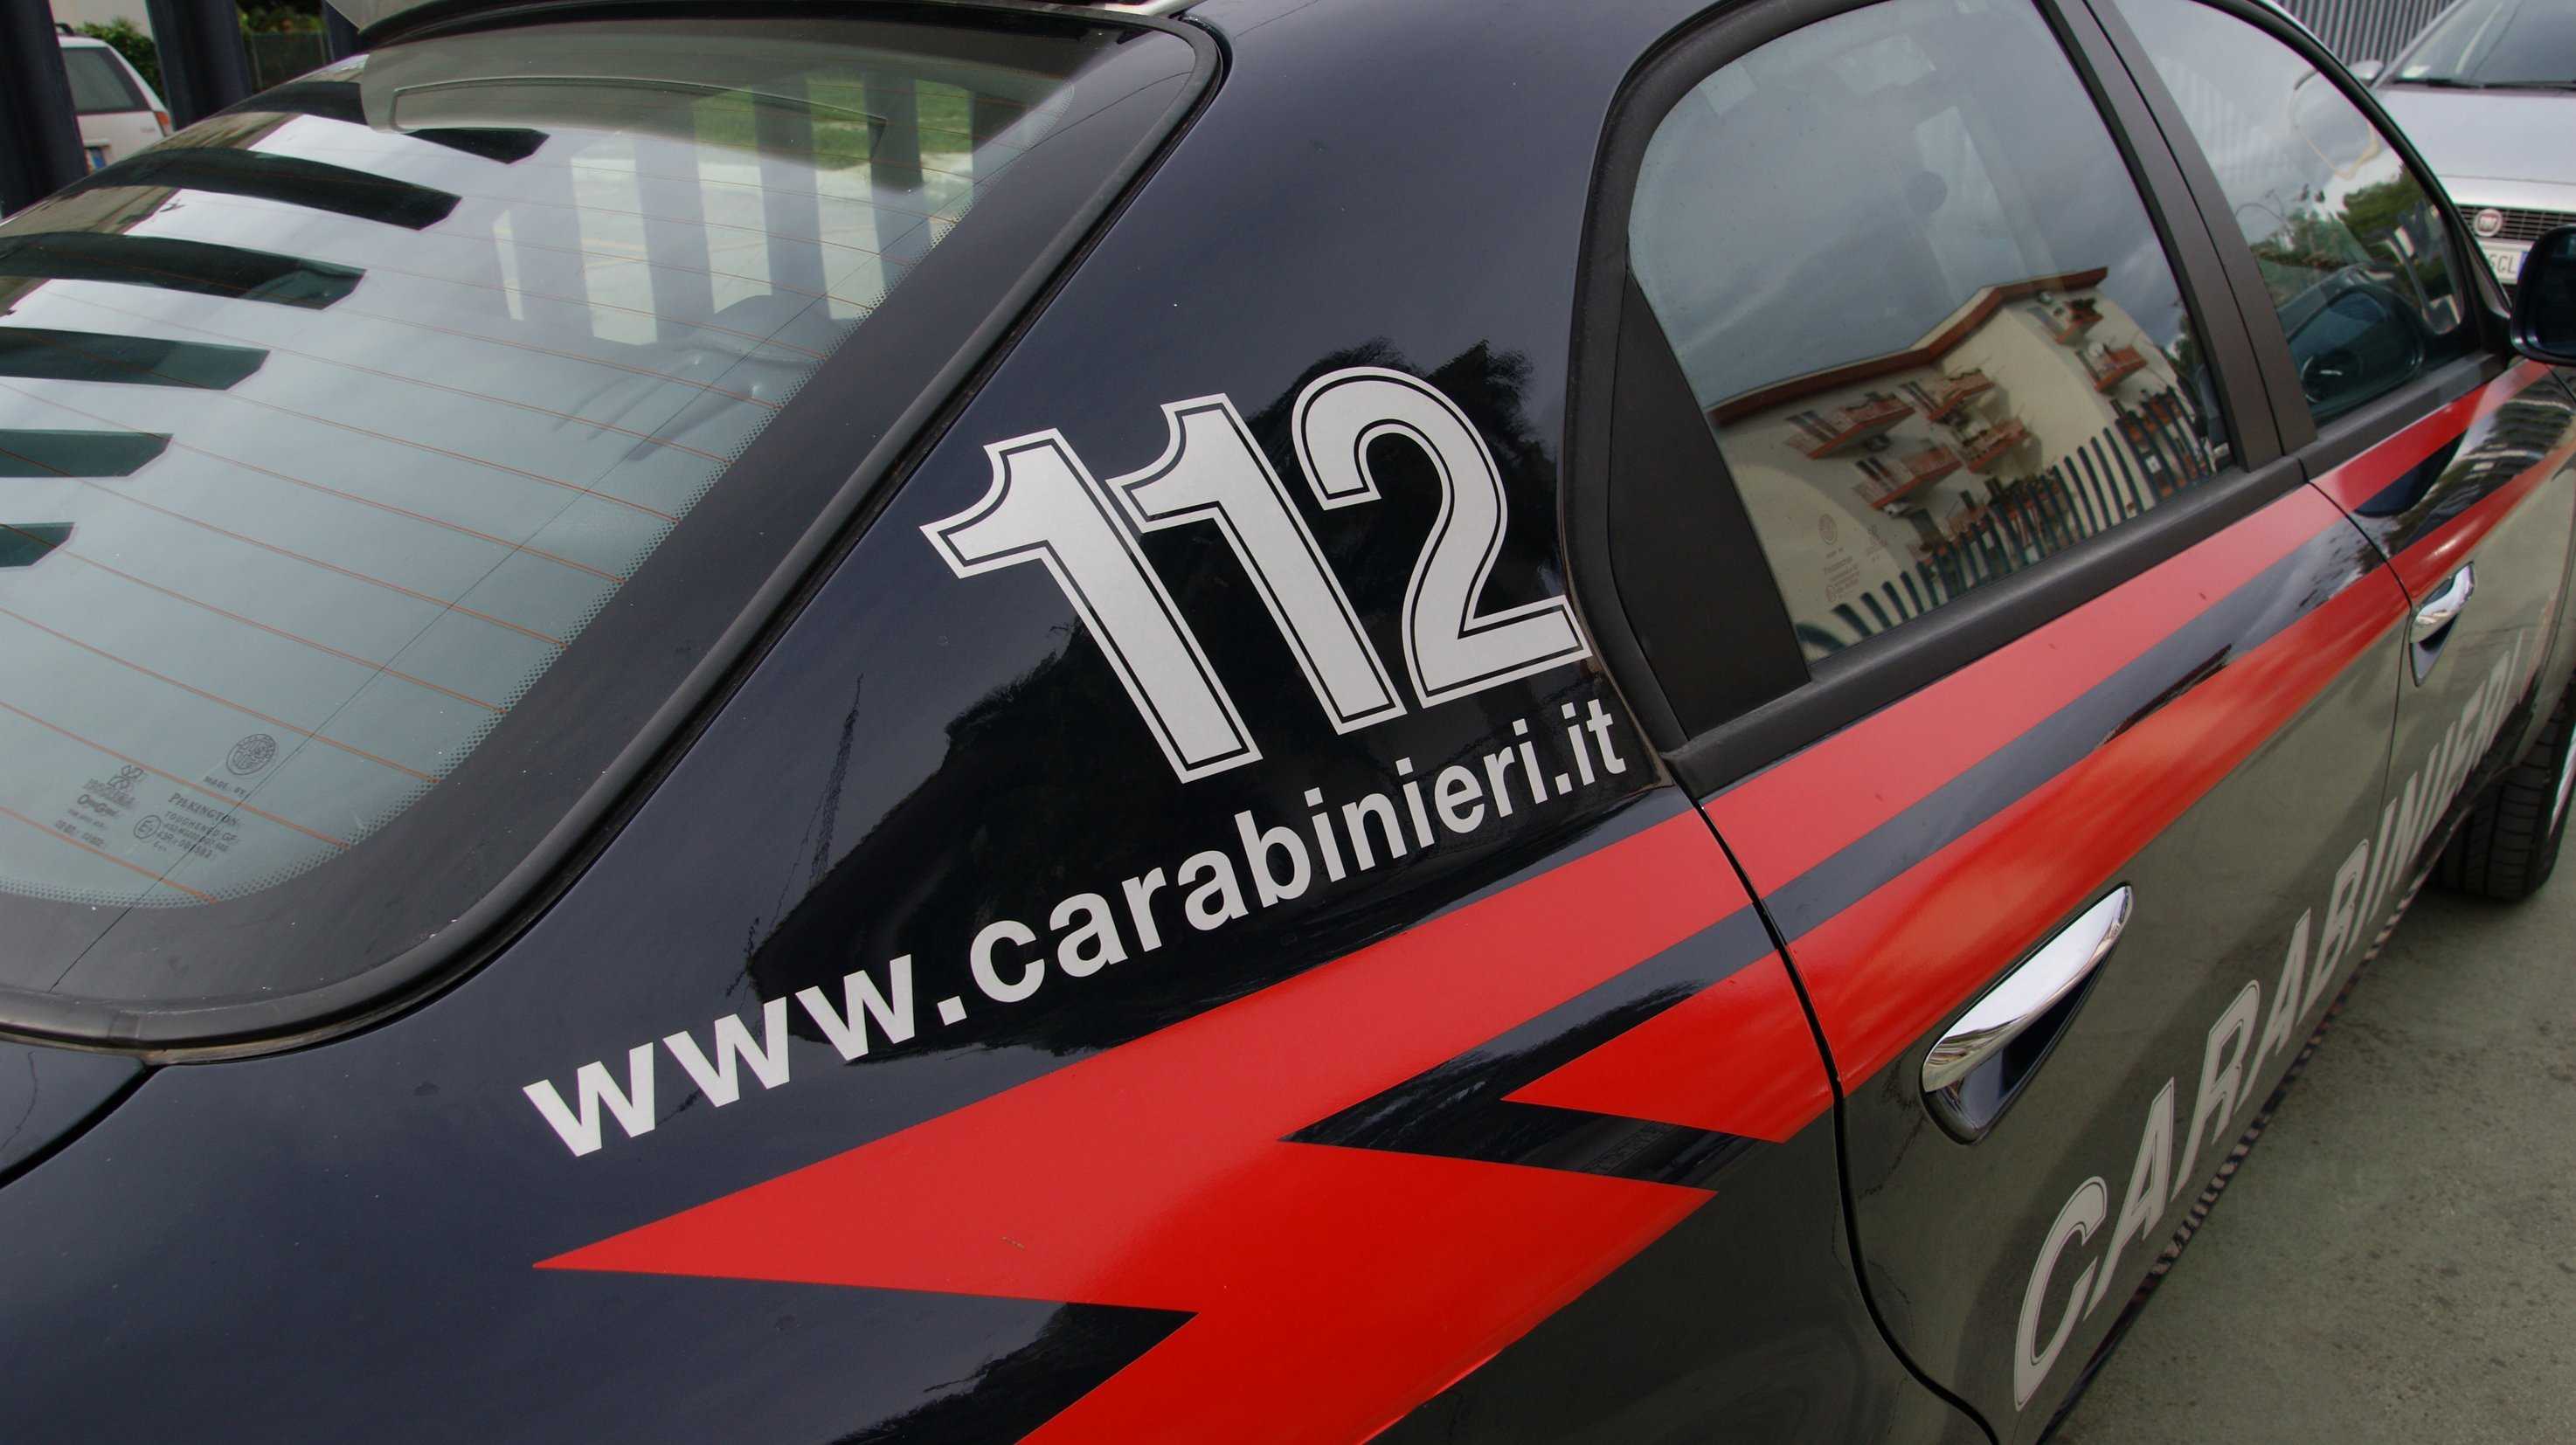 Operazione Carabinieri, sequestro auto, usate per rapine e furti, 40 indagati e 10 arresti